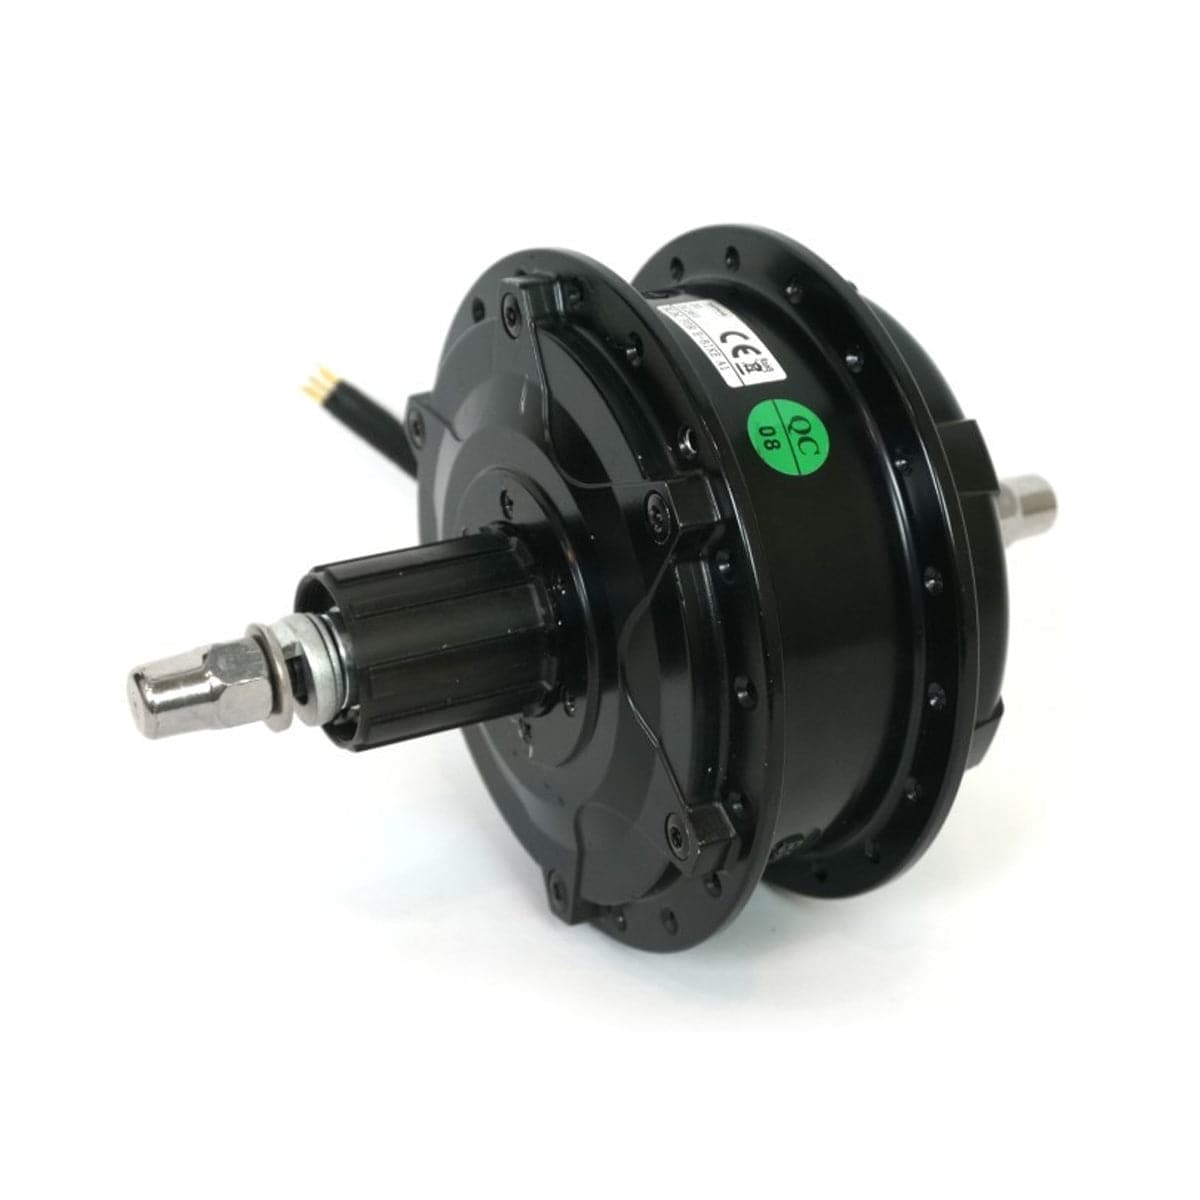 Hub Motor Kit | Includes Wheel & Motor Kit - Power in Motion